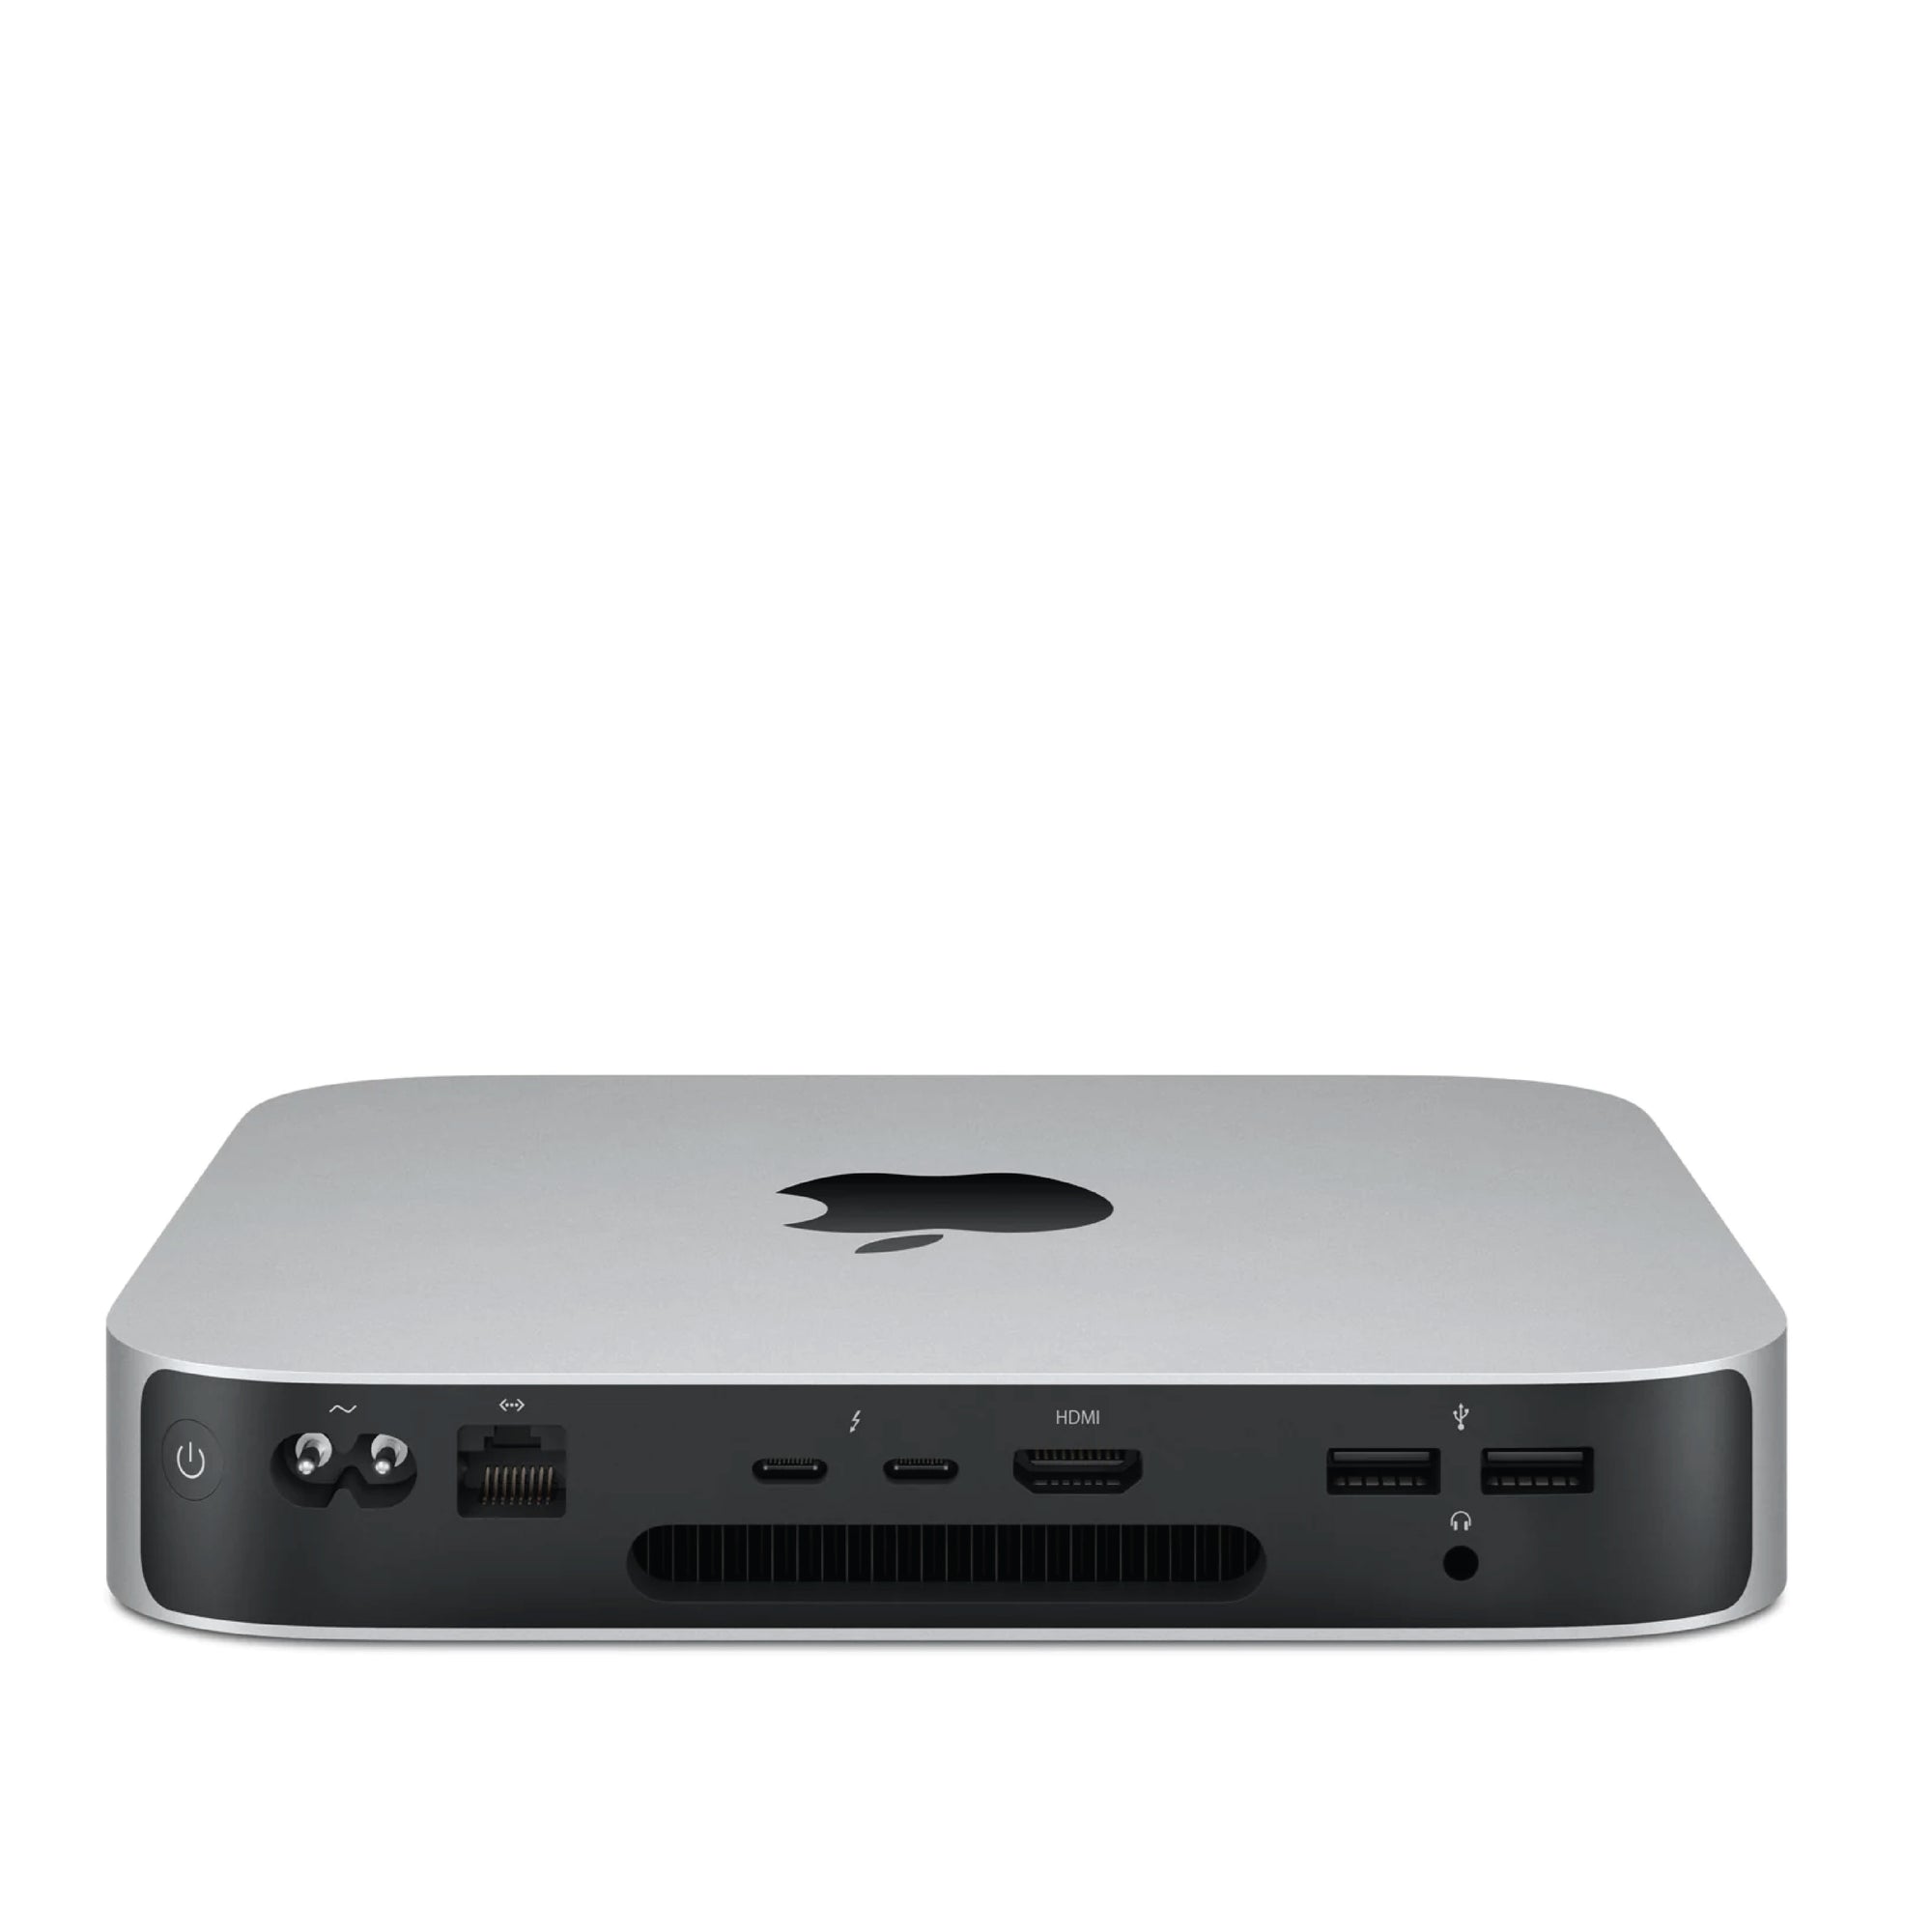 Mac Mini Data Wipe New OSx Install